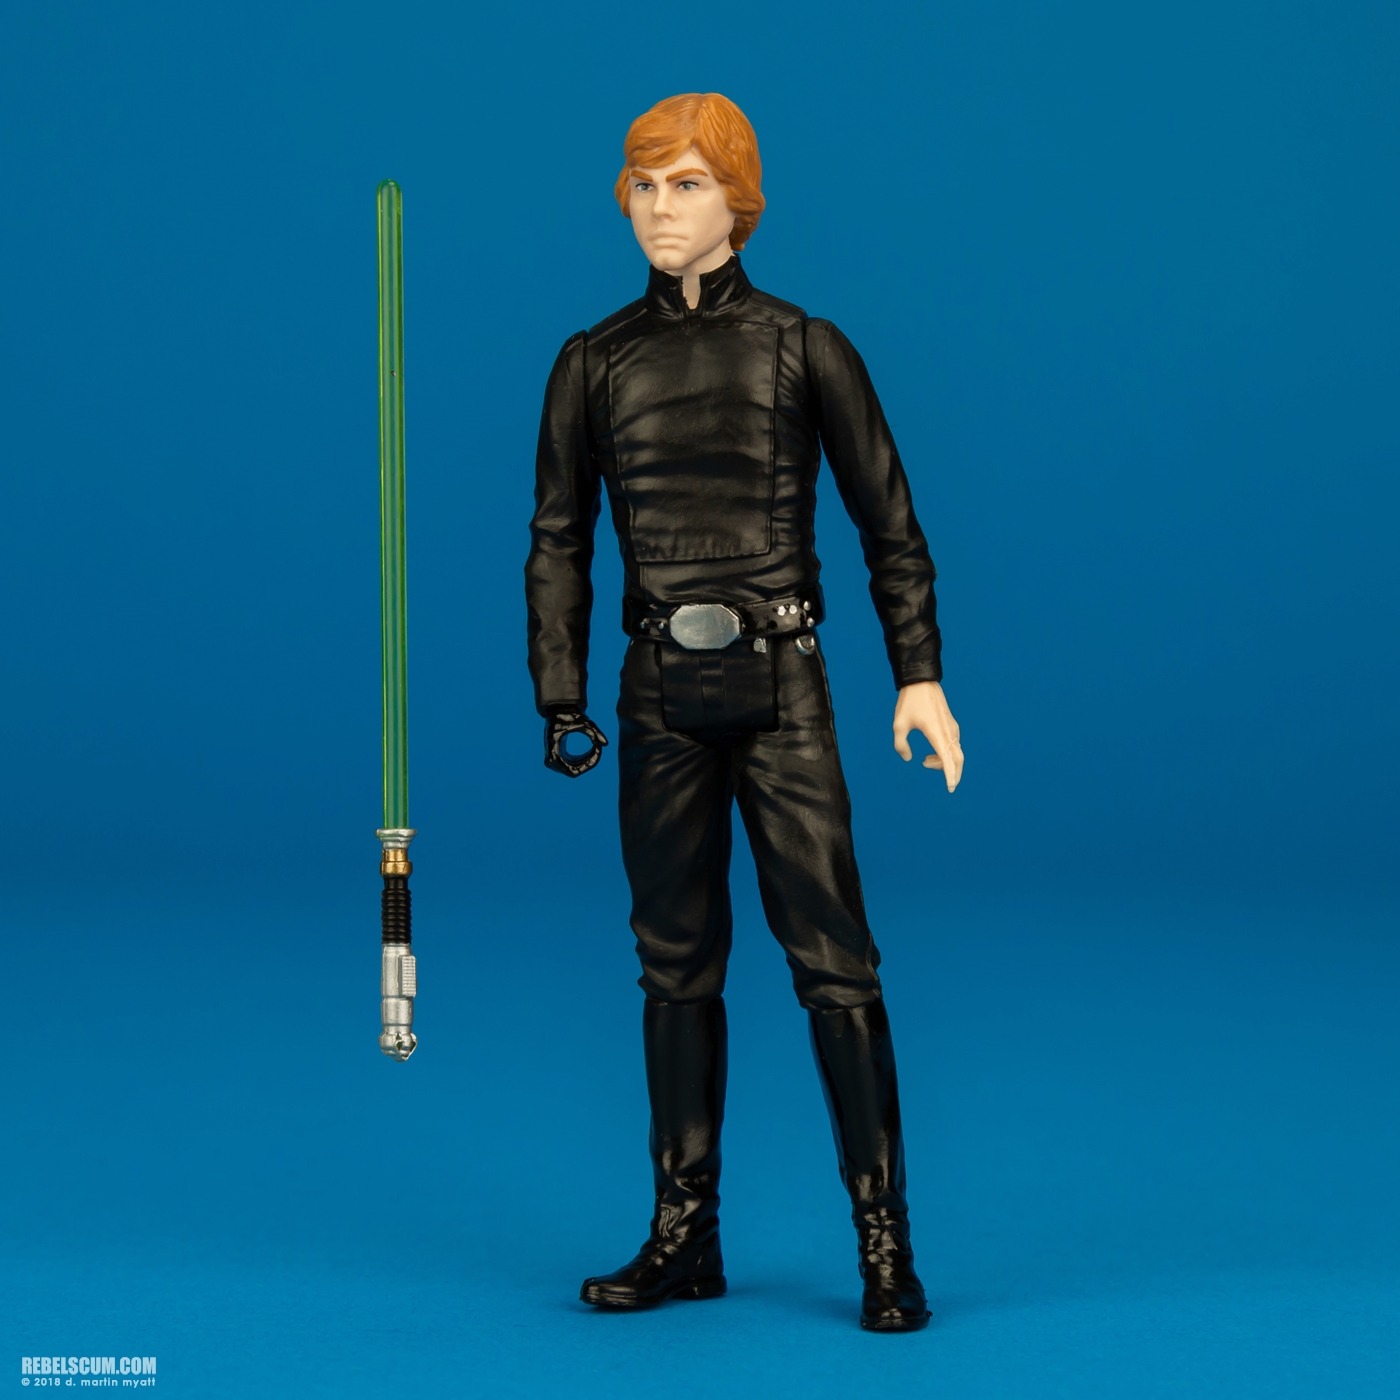 Luke-Skywalker-ROTJ-Solo-Force-Link-Hasbro-005.jpg